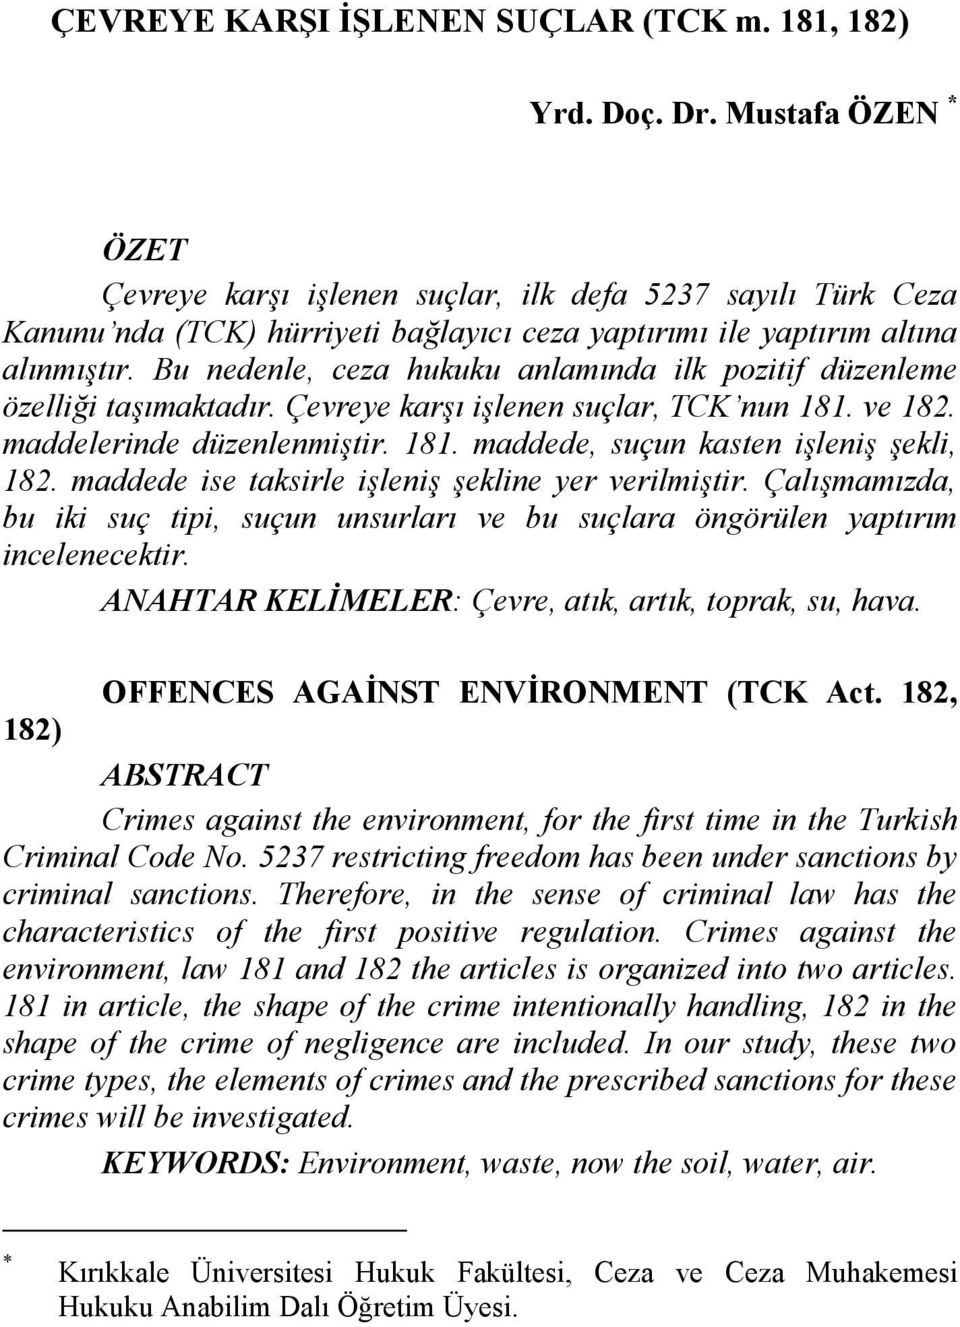 Bu nedenle, ceza hukuku anlamında ilk pozitif düzenleme özelliği taşımaktadır. Çevreye karşı işlenen suçlar, TCK nun 181. ve 182. maddelerinde düzenlenmiştir. 181. maddede, suçun kasten işleniş şekli, 182.